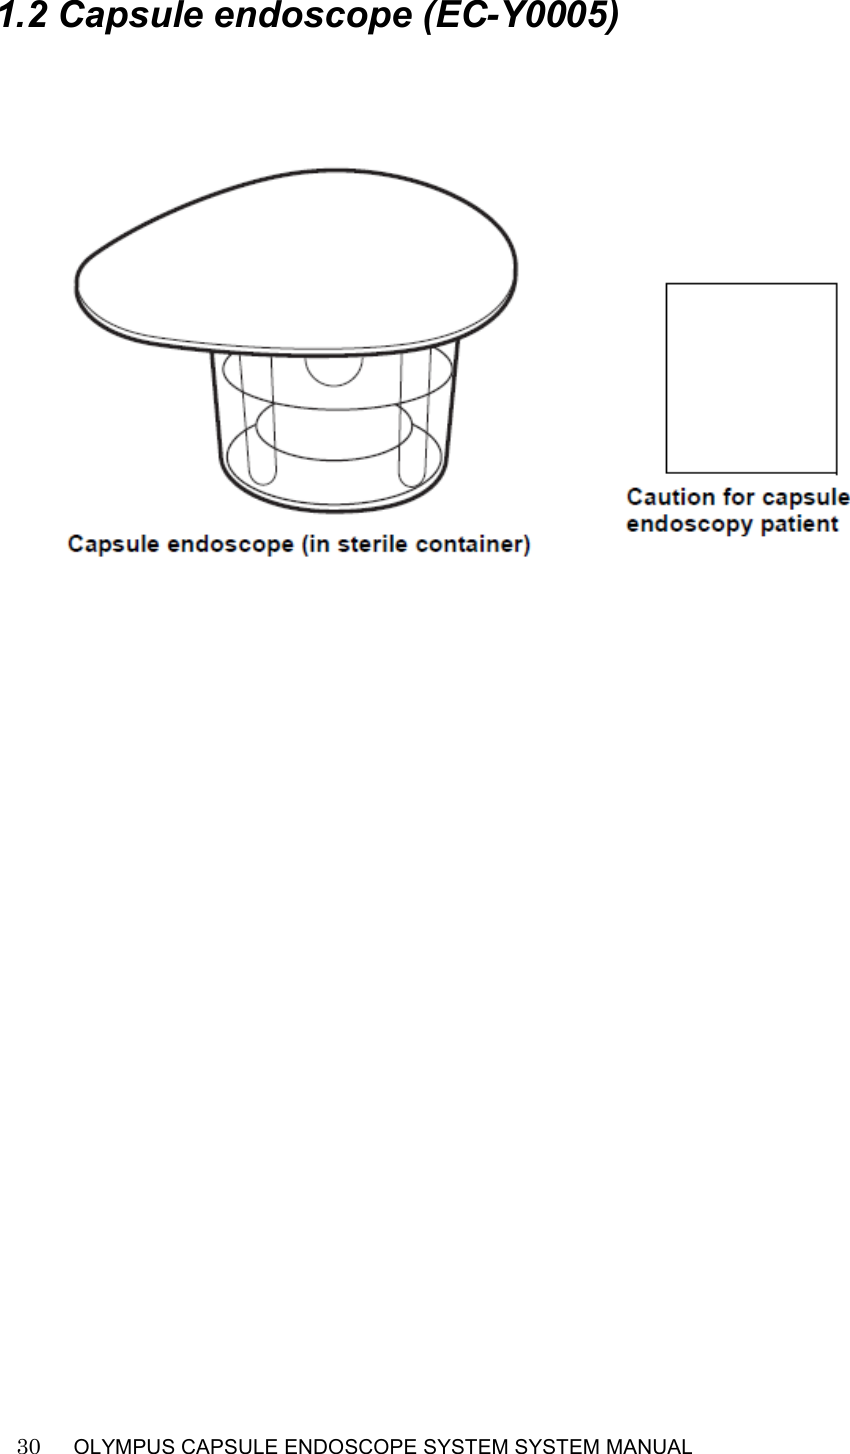    30   OLYMPUS CAPSULE ENDOSCOPE SYSTEM SYSTEM MANUAL                                                          1.2 Capsule endoscope (EC-Y0005)       